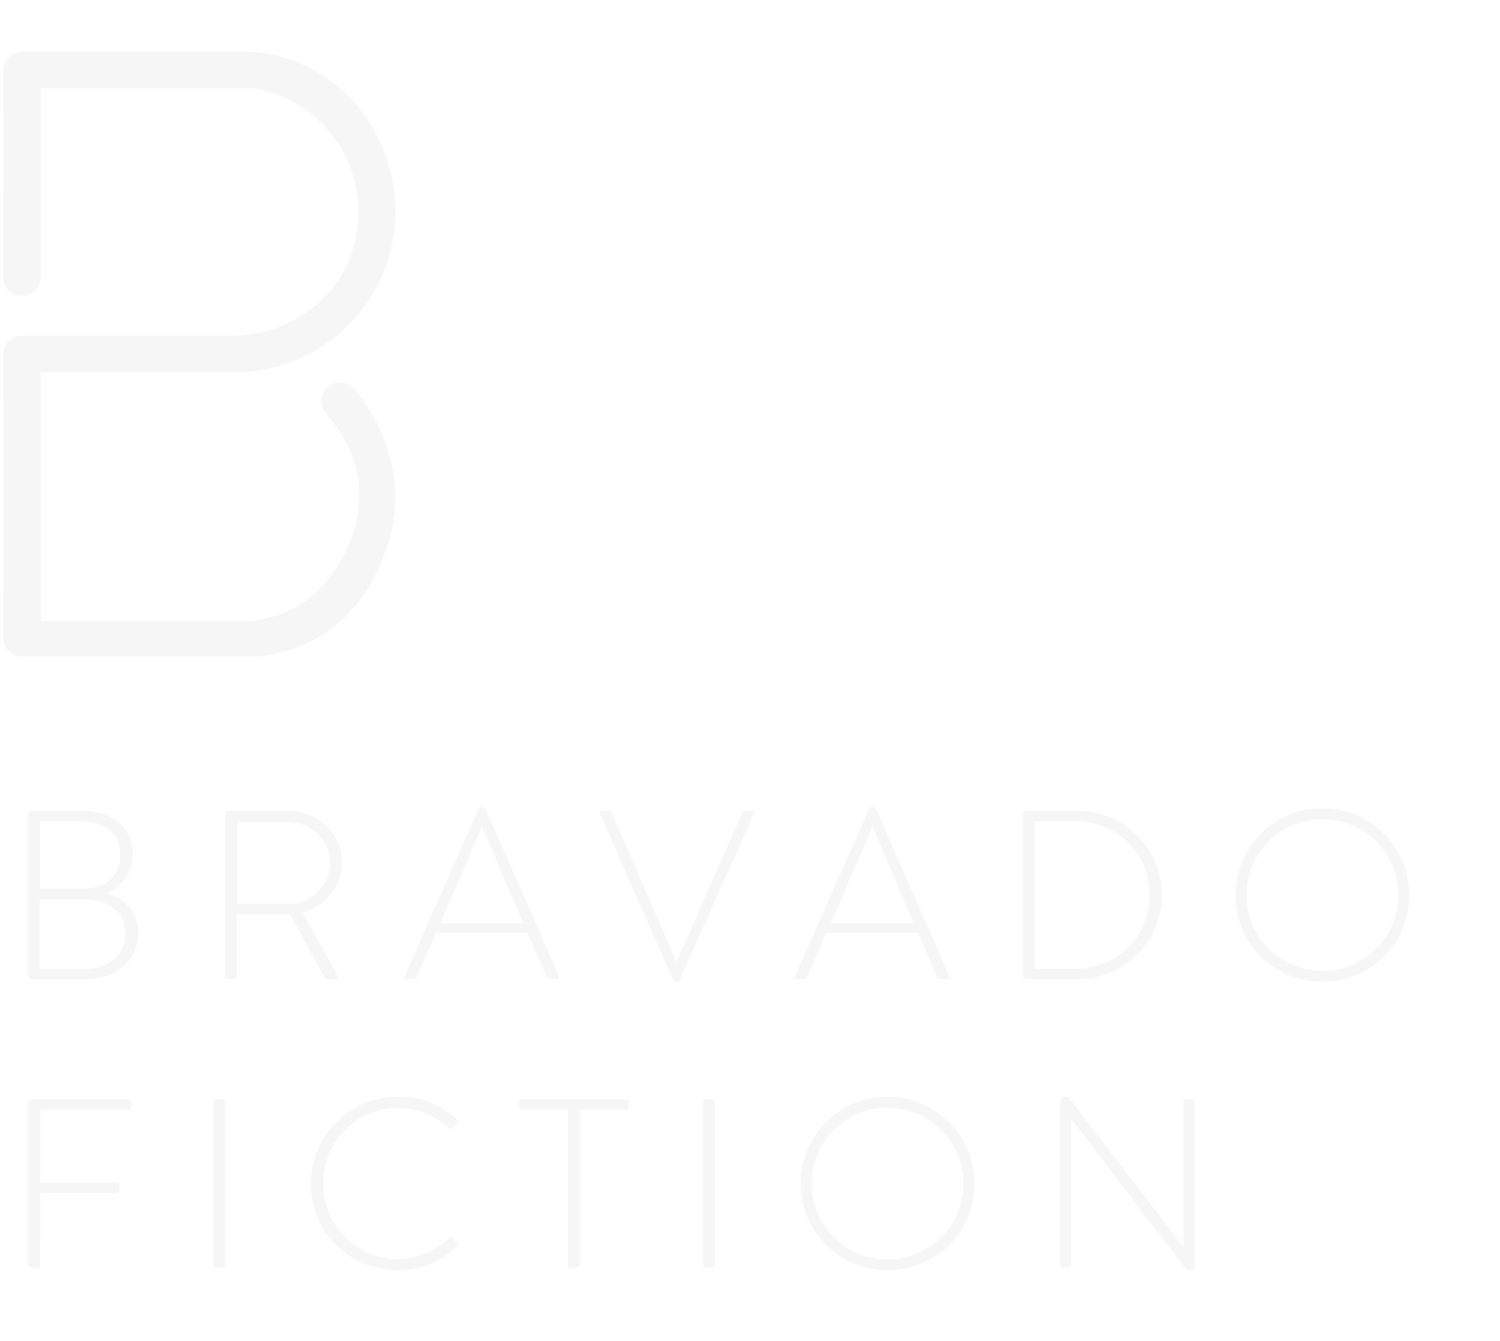 BRAVADO FICTION